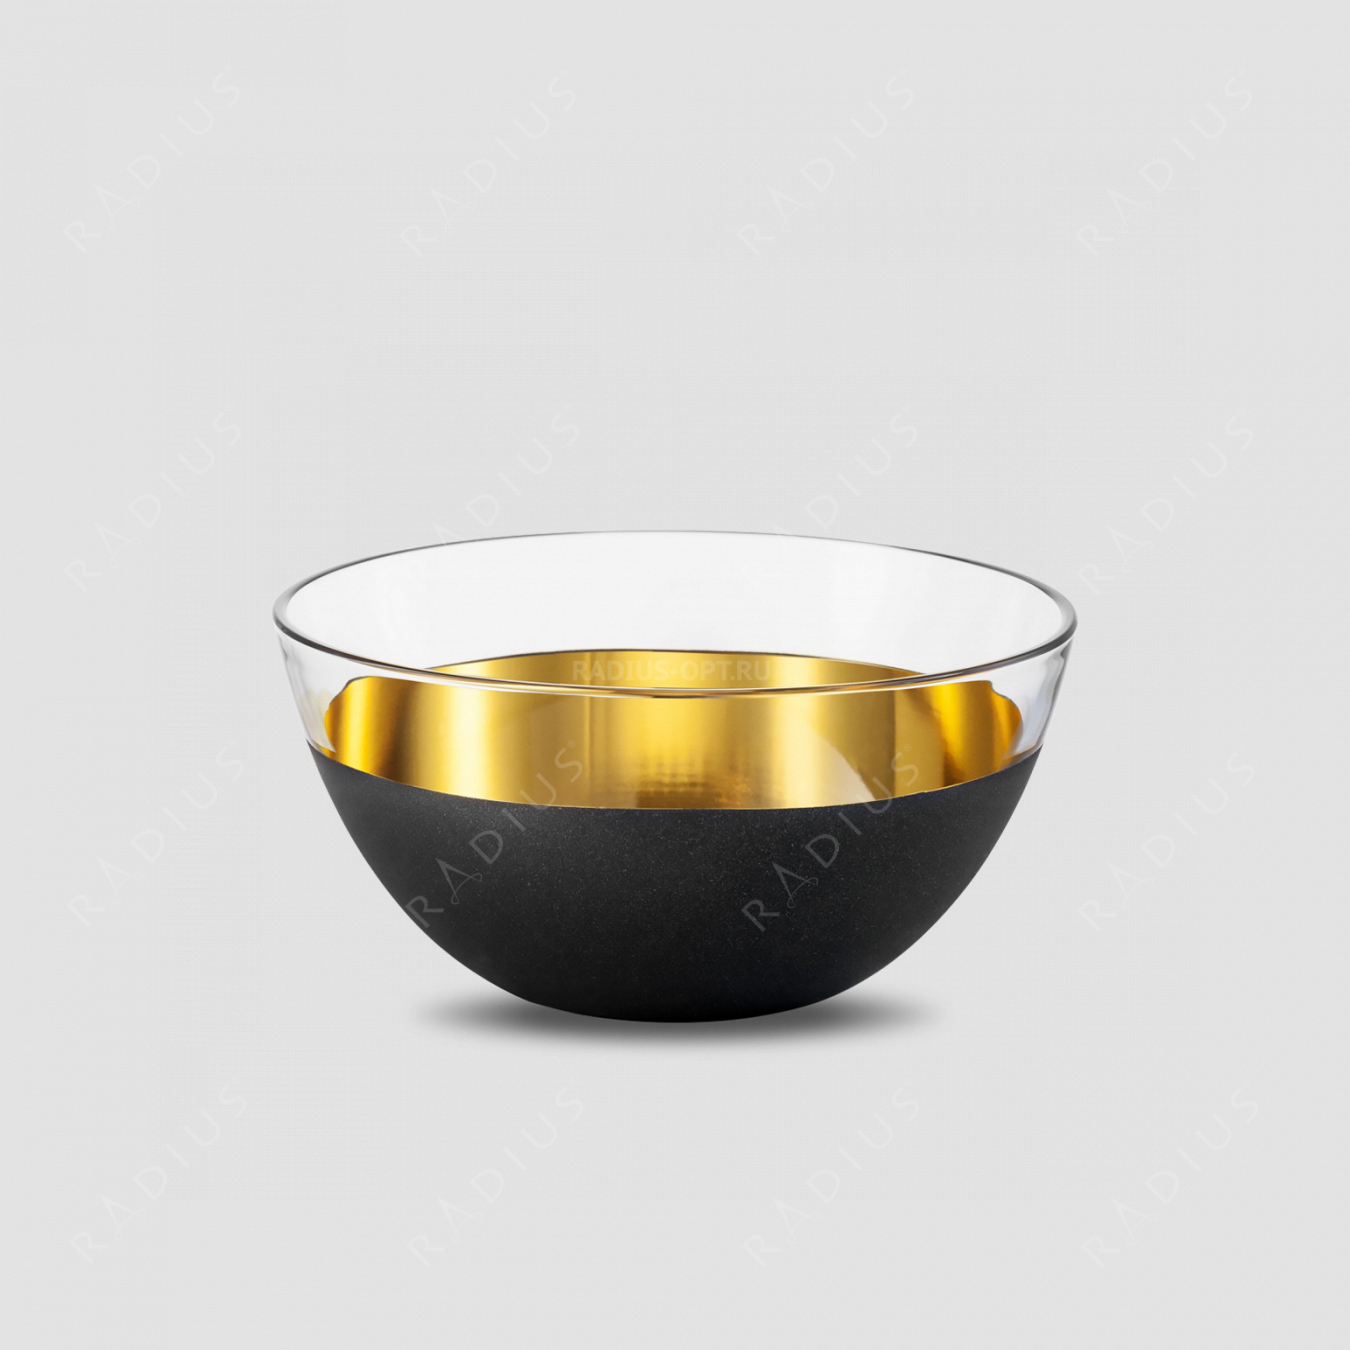 Чаша Gold, диаметр: 14 см, материал: бессвинцовый хрусталь, цвет: черный/золото, серия Cosmo, EISCH, Германия